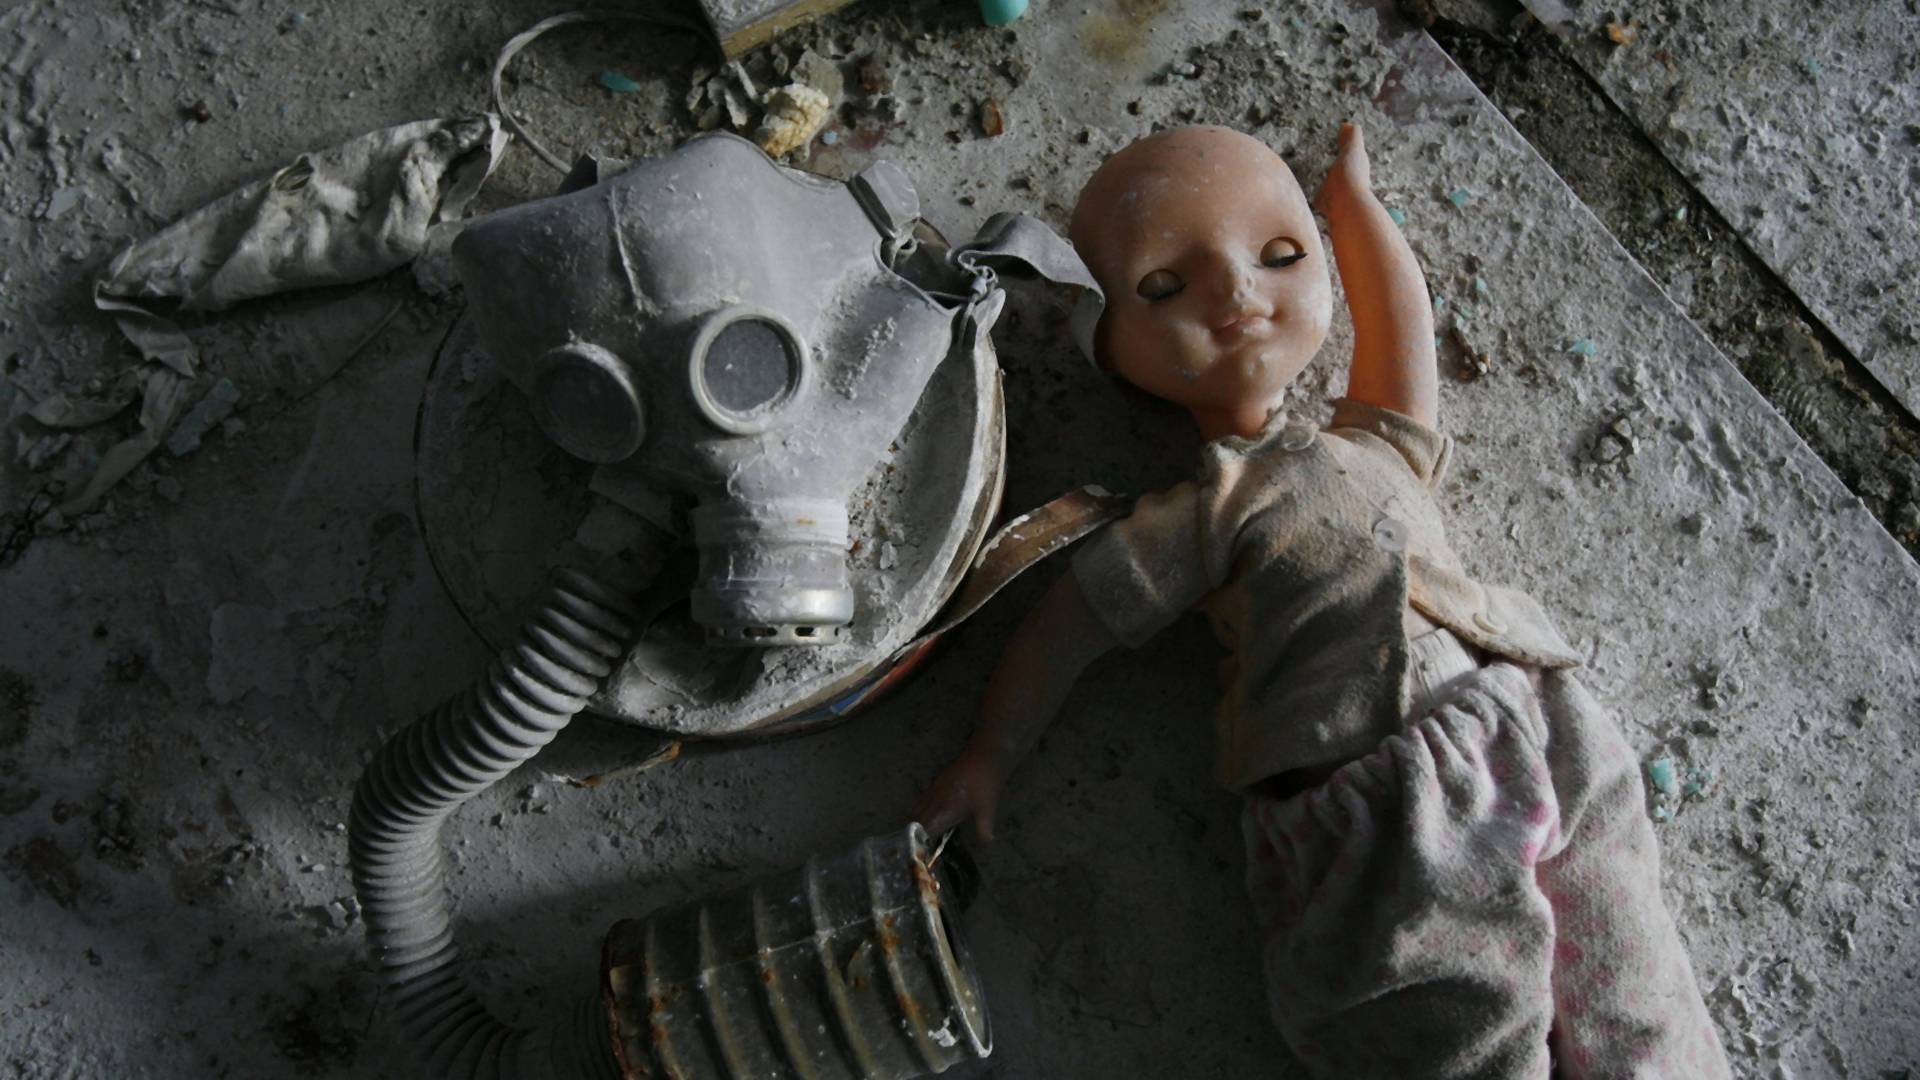 Mistična sudbina tri heroja Černobilja - kako su rešili da polože živote za čovečanstvo i čudom preživeli